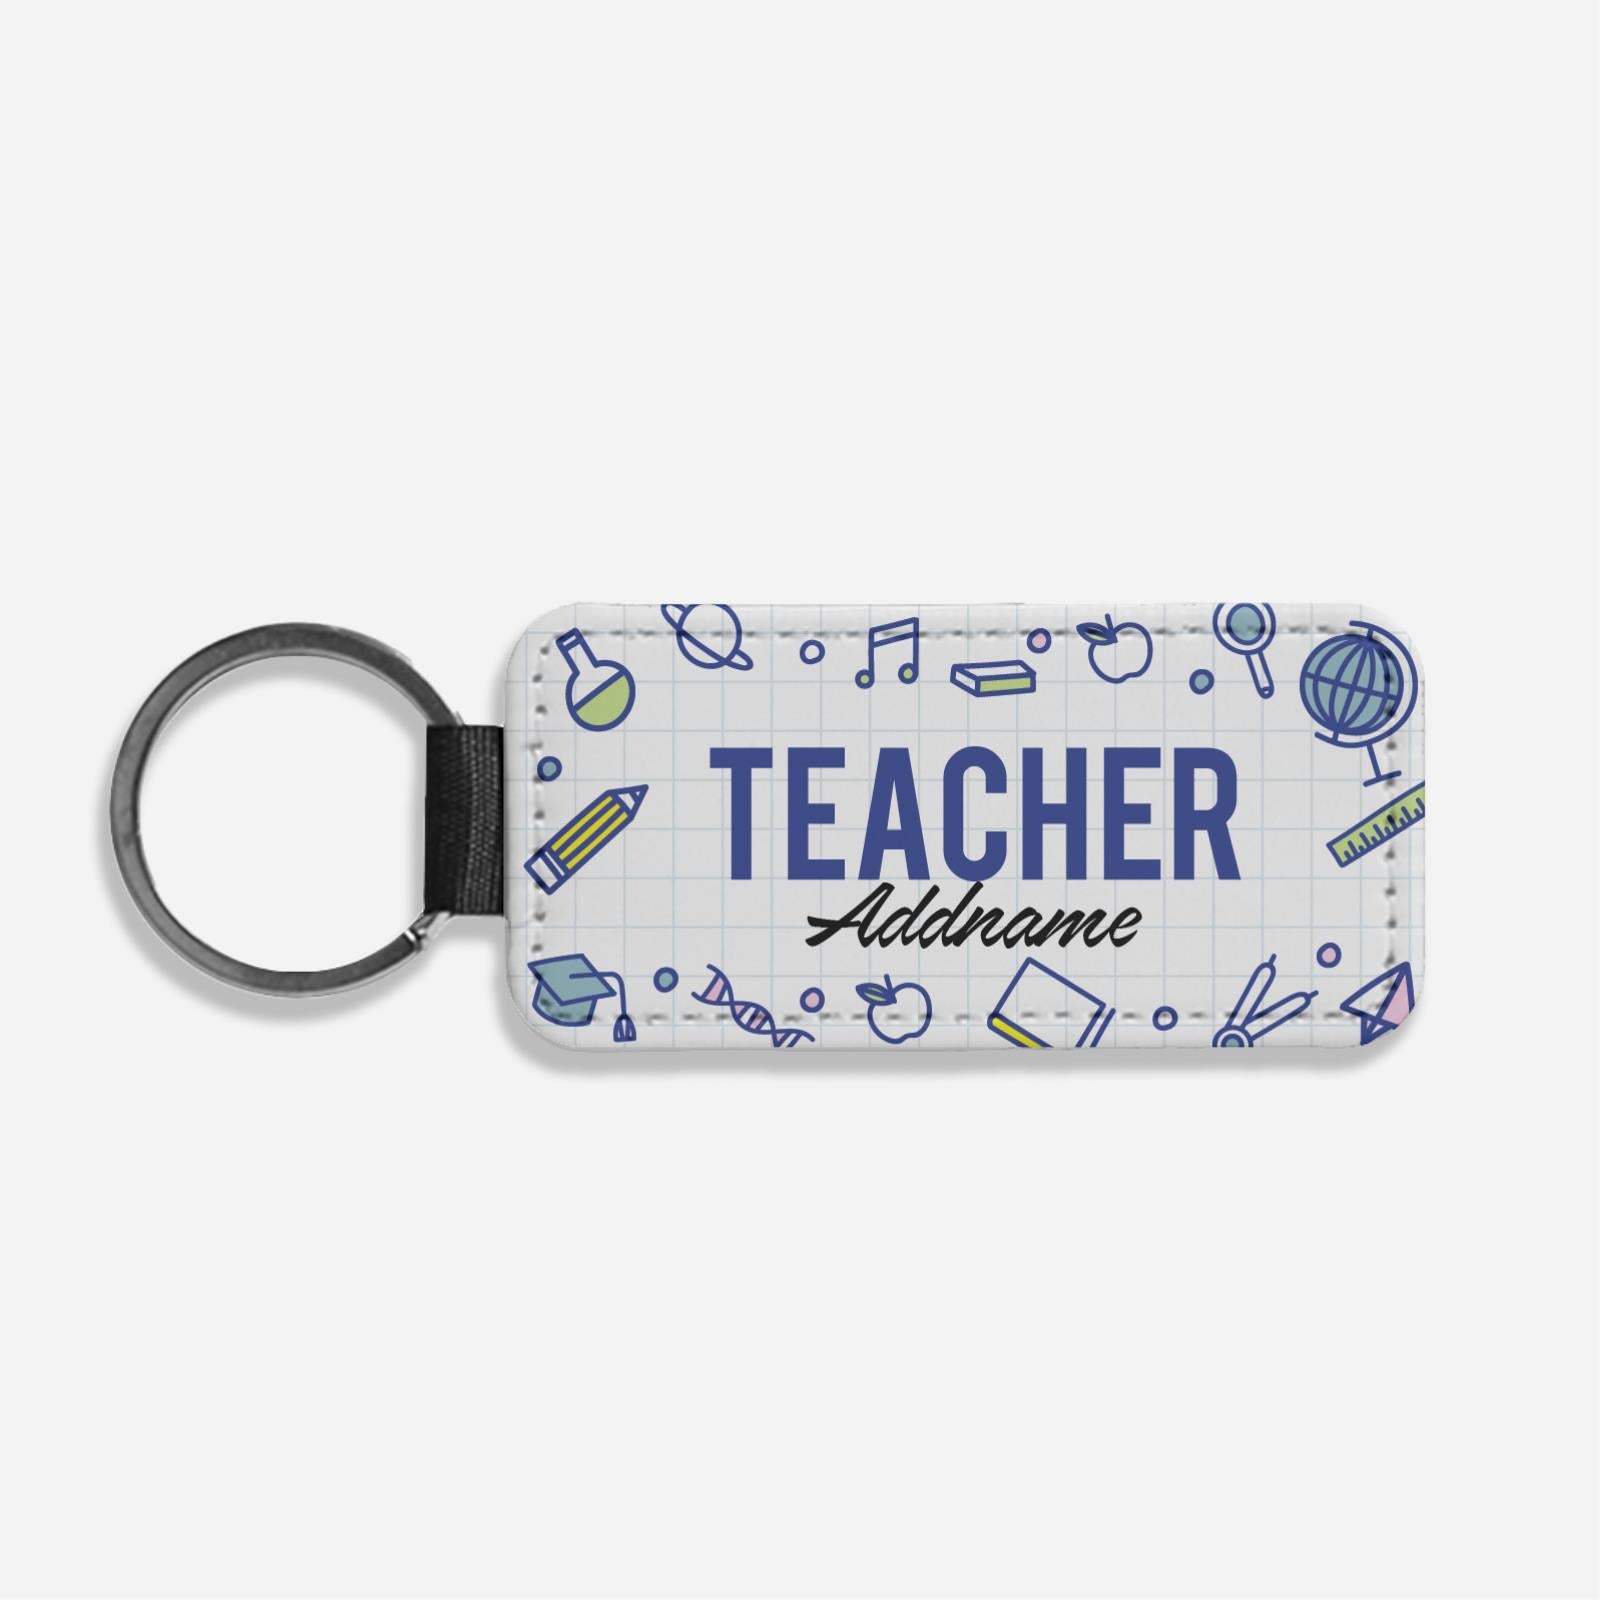 Teacher Title Classic Keychain - Teacher